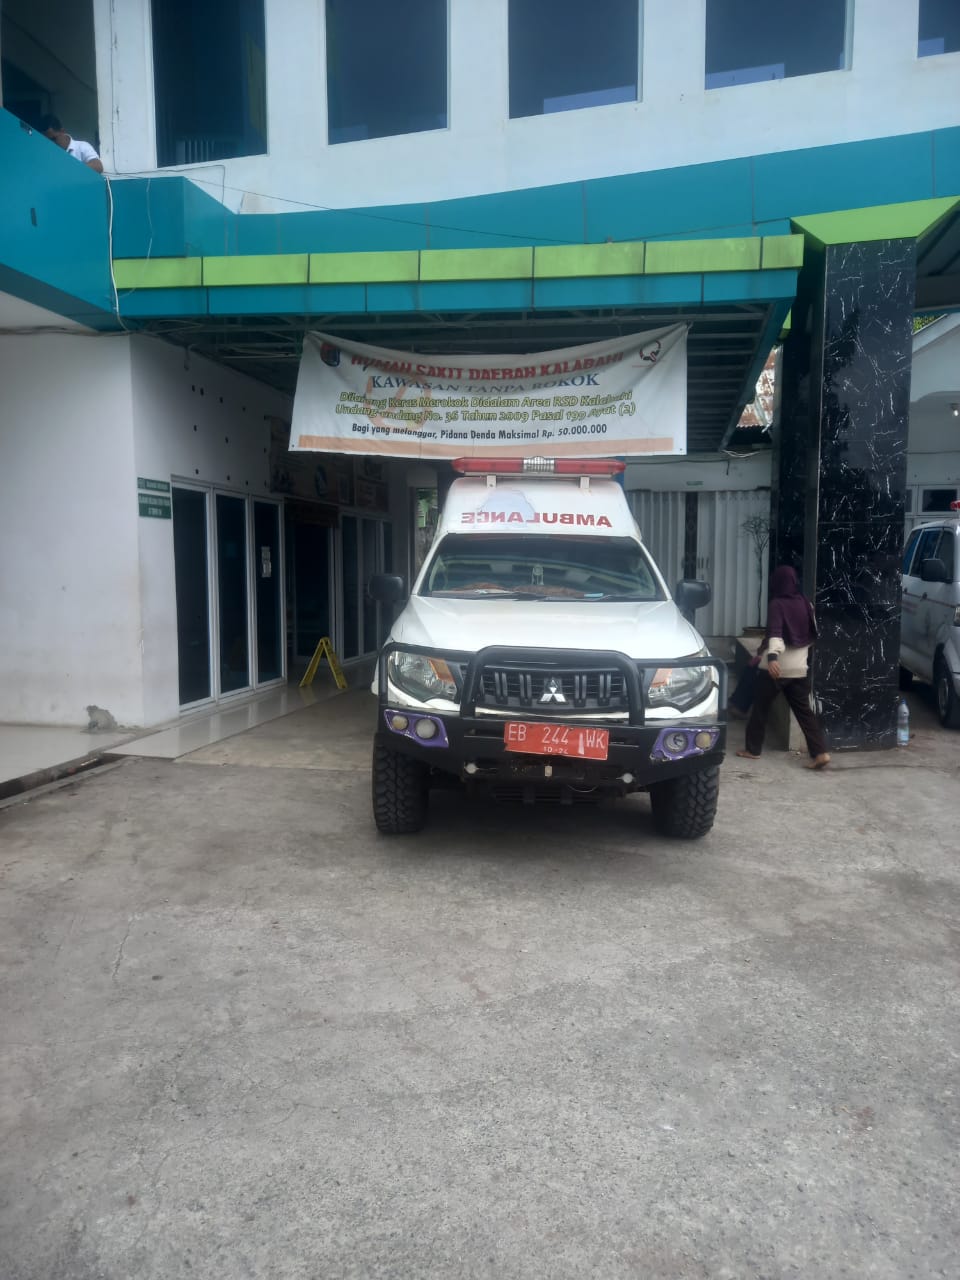 Mobil Ambulance milik Puskesmas Lawahing yang mengantar Ibu Hamil Kulsum Maro ke Rumah Sakit Daerah Kalabahi saat tiba di IGD. FOTO:ISTIMEWAH